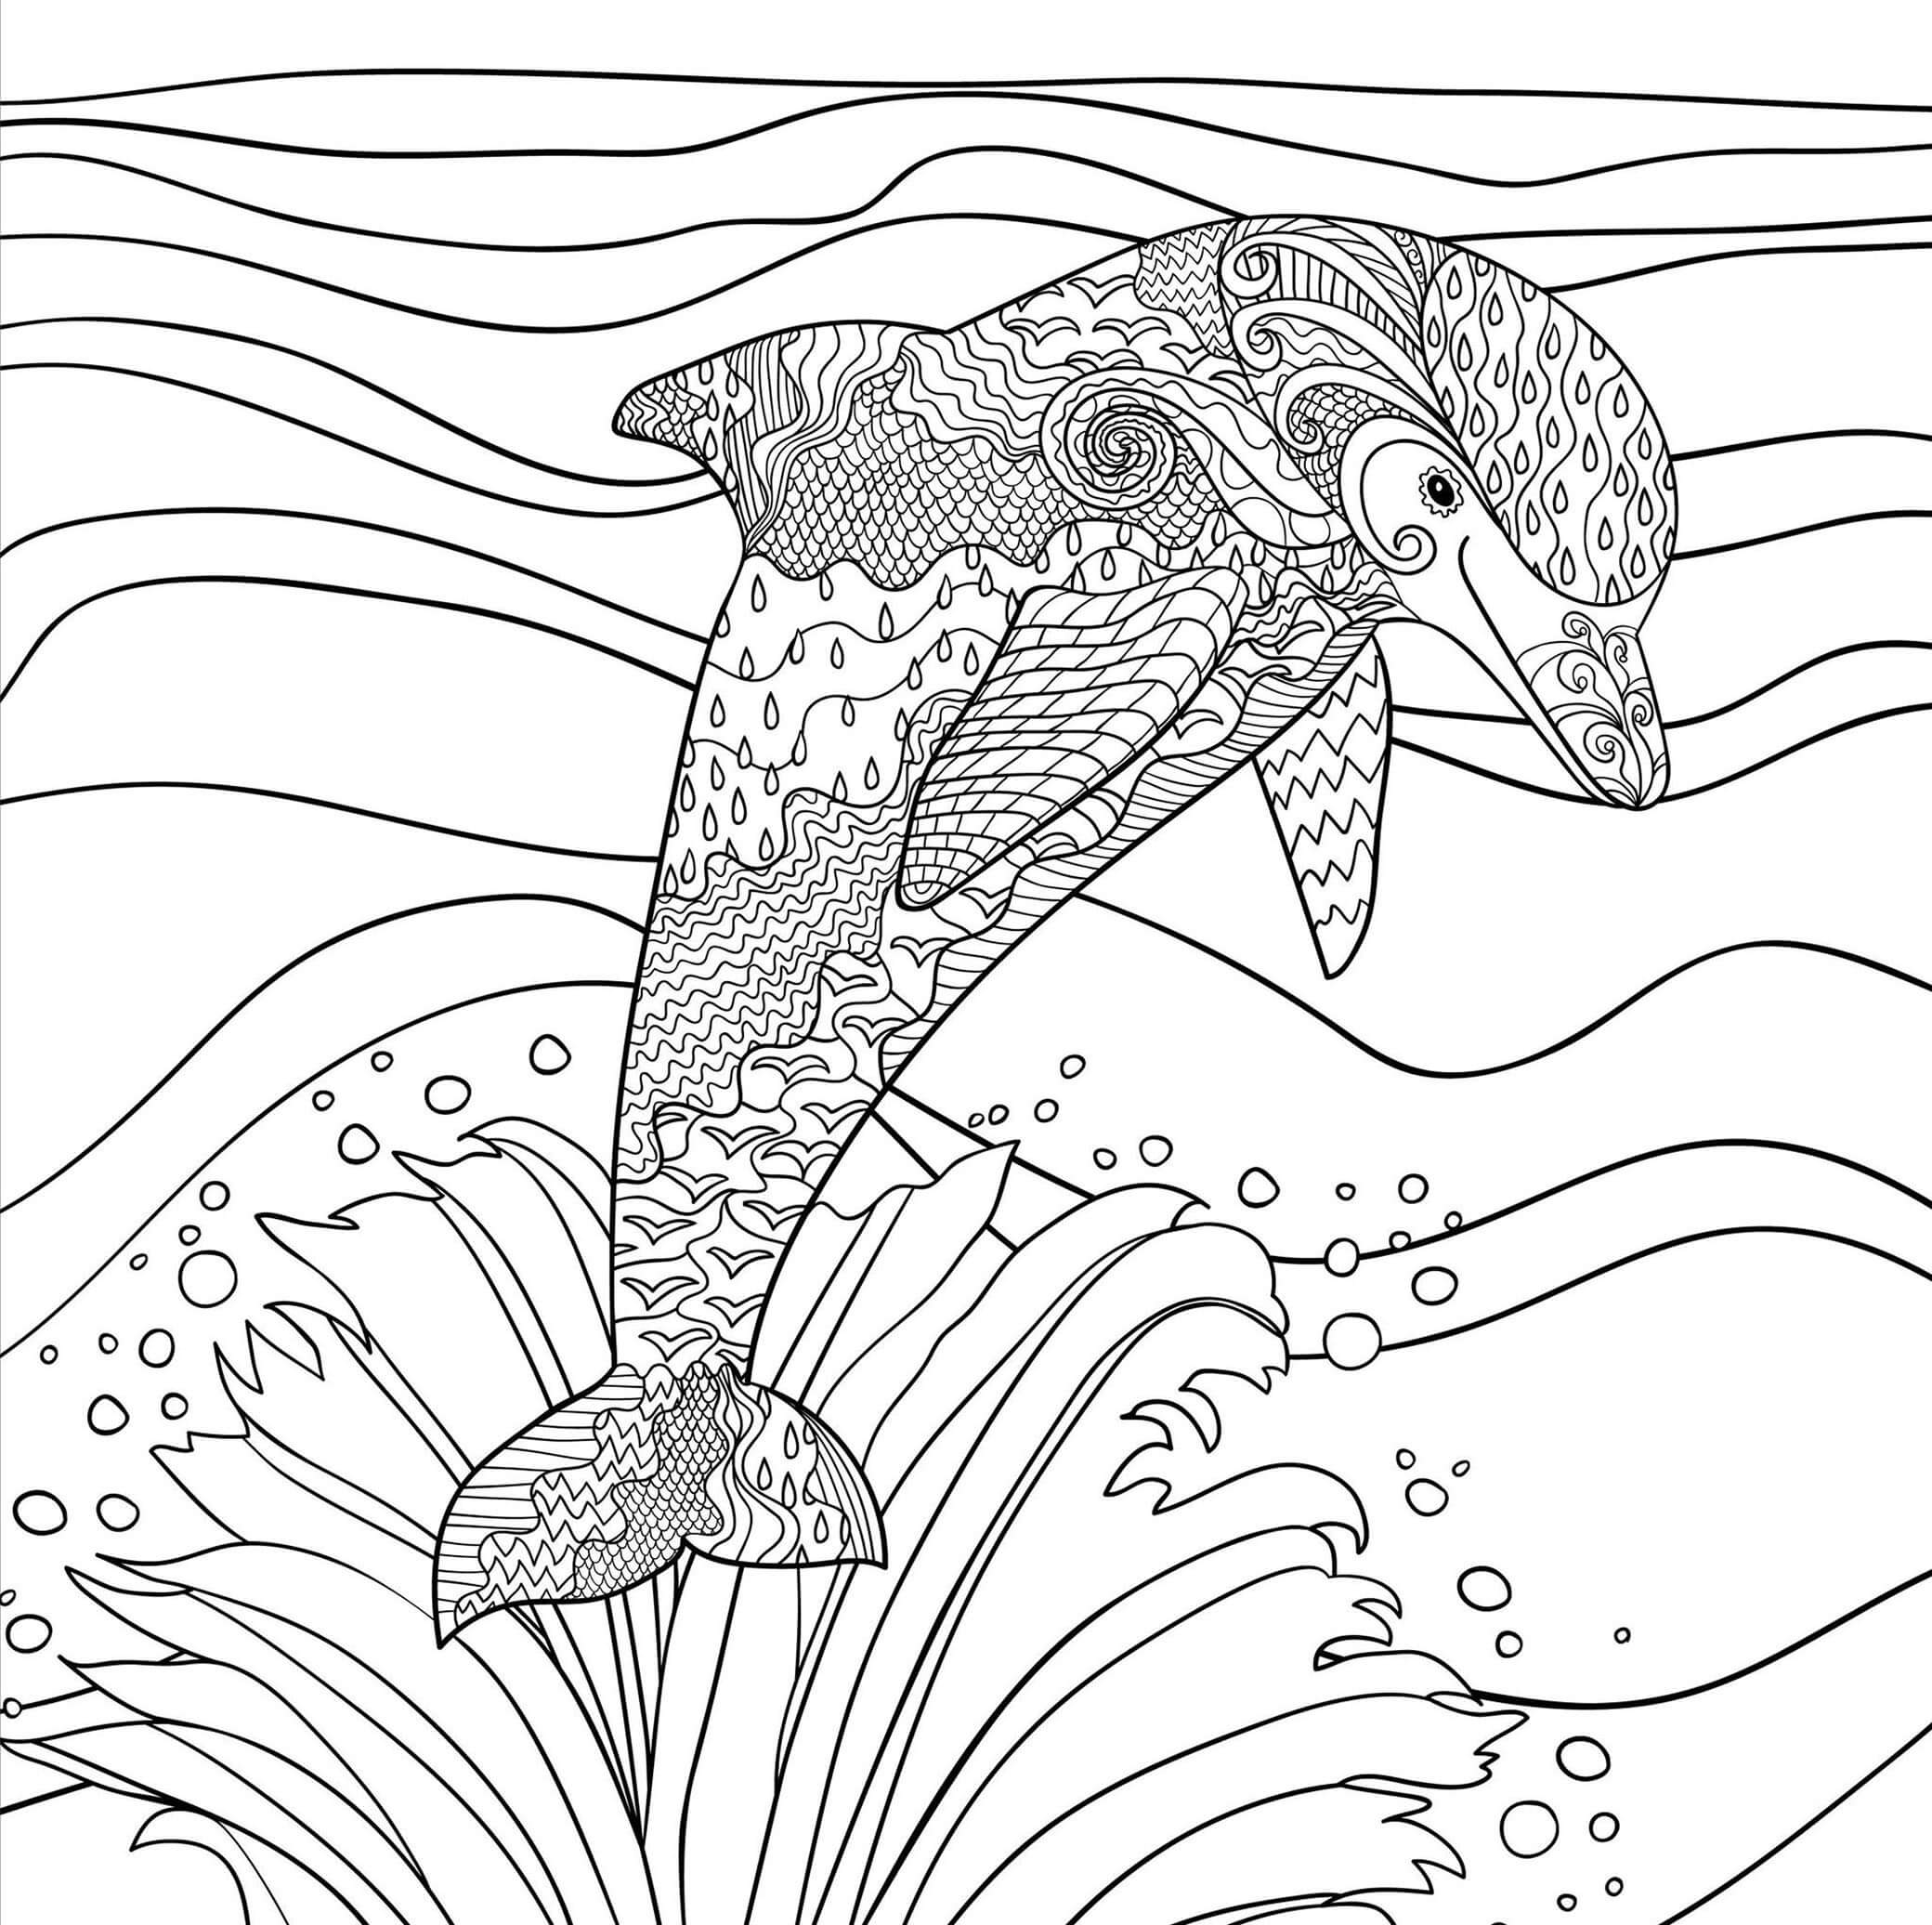 Mandala Dolphin Coloring Page - Sheet 9 Mandalas